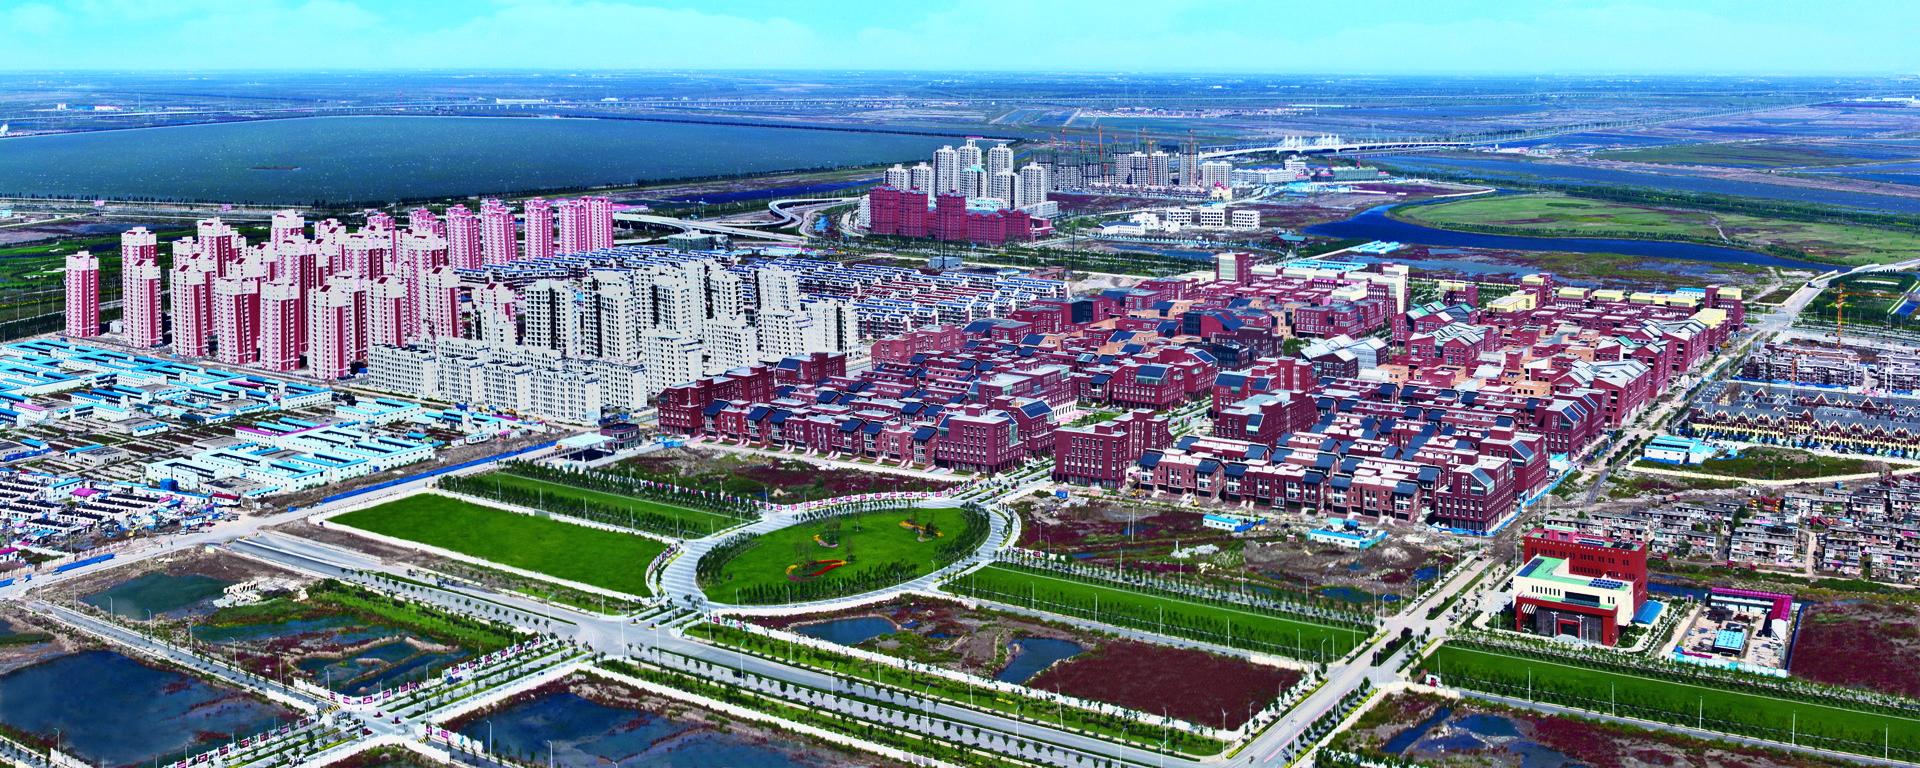 天津滨海新区打造京津冀协同发展新高地